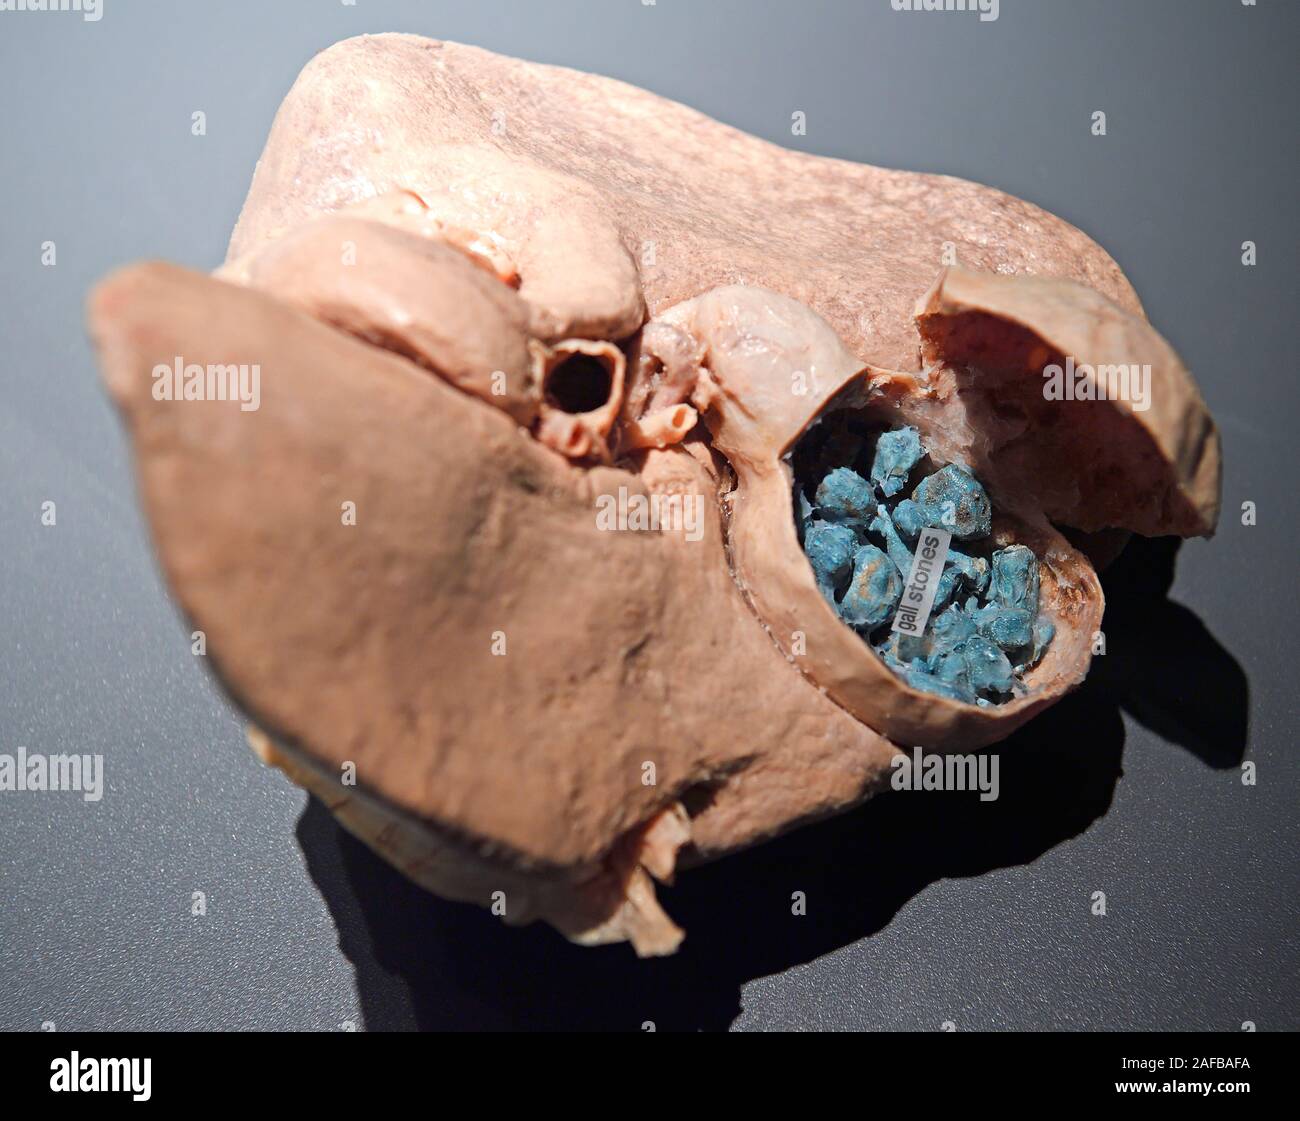 Präparat, Plastinat, Gallenblase mit Gallensteinen, Menschen Museum di Berlino, Deutschland Foto Stock